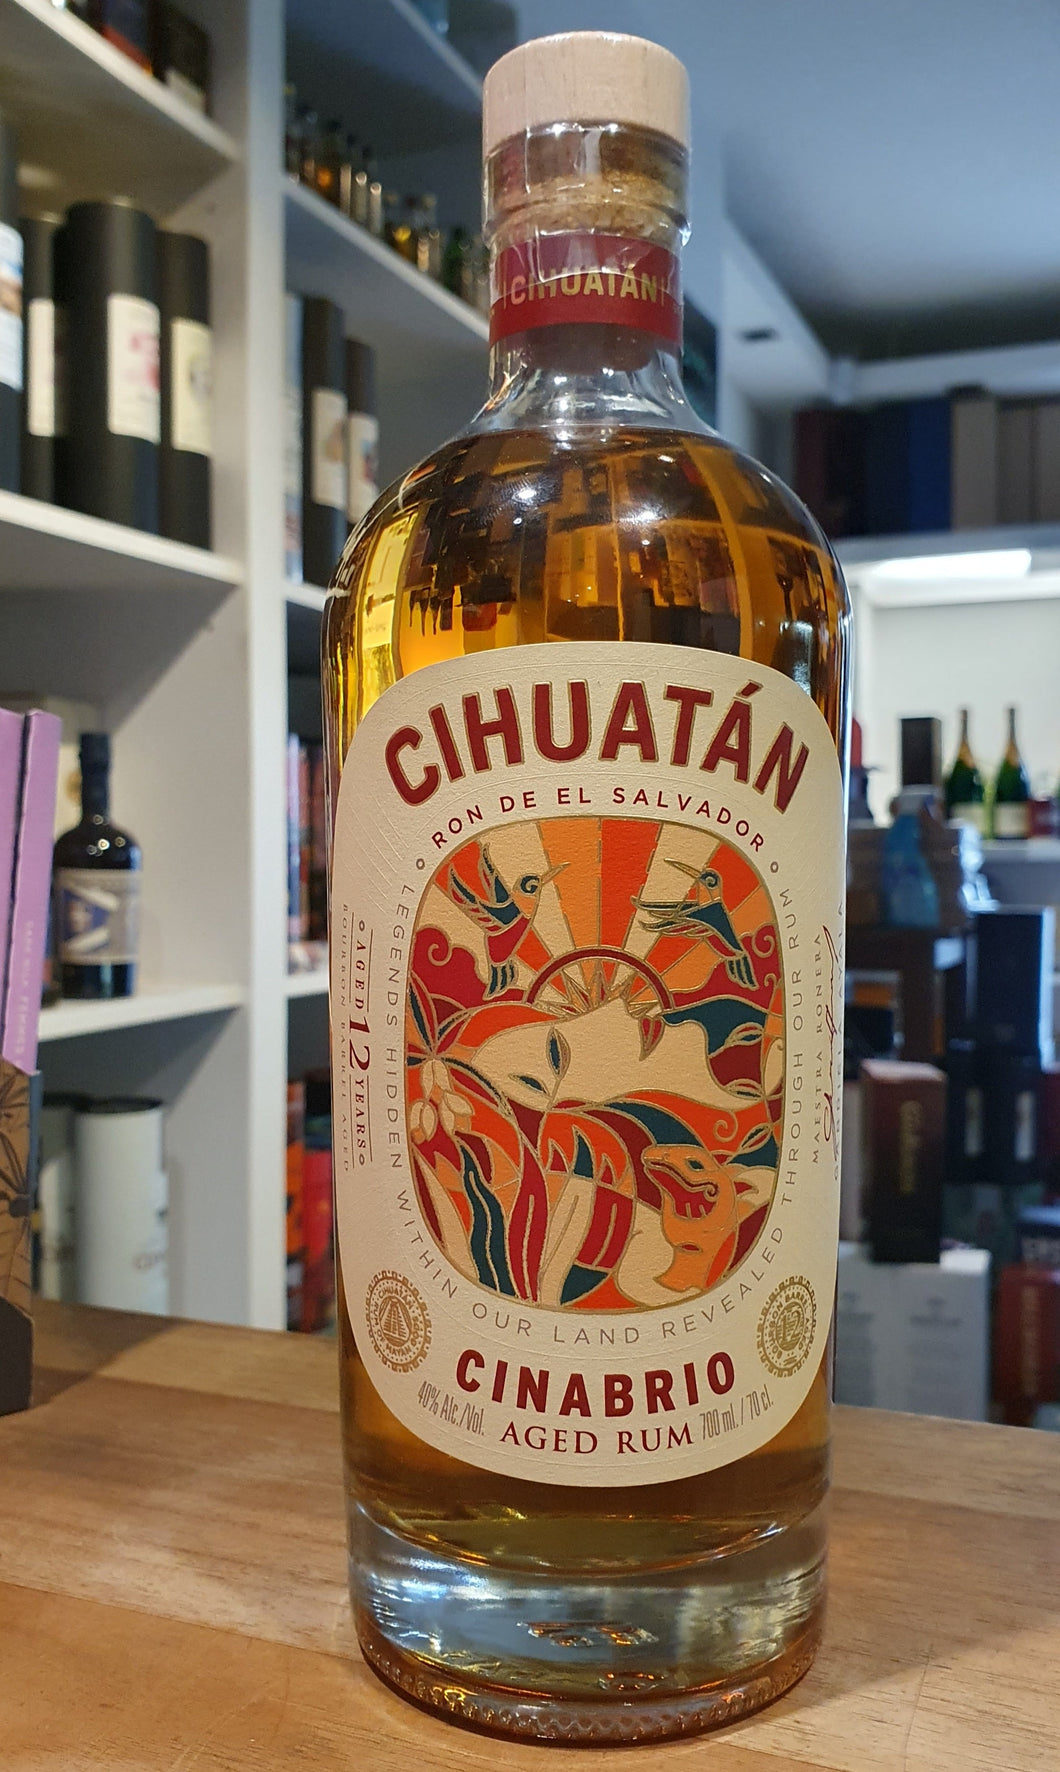 Cihuatan Cinabrio 12y Rum el salvador 0,7l 40% vol. OHNE DOSE